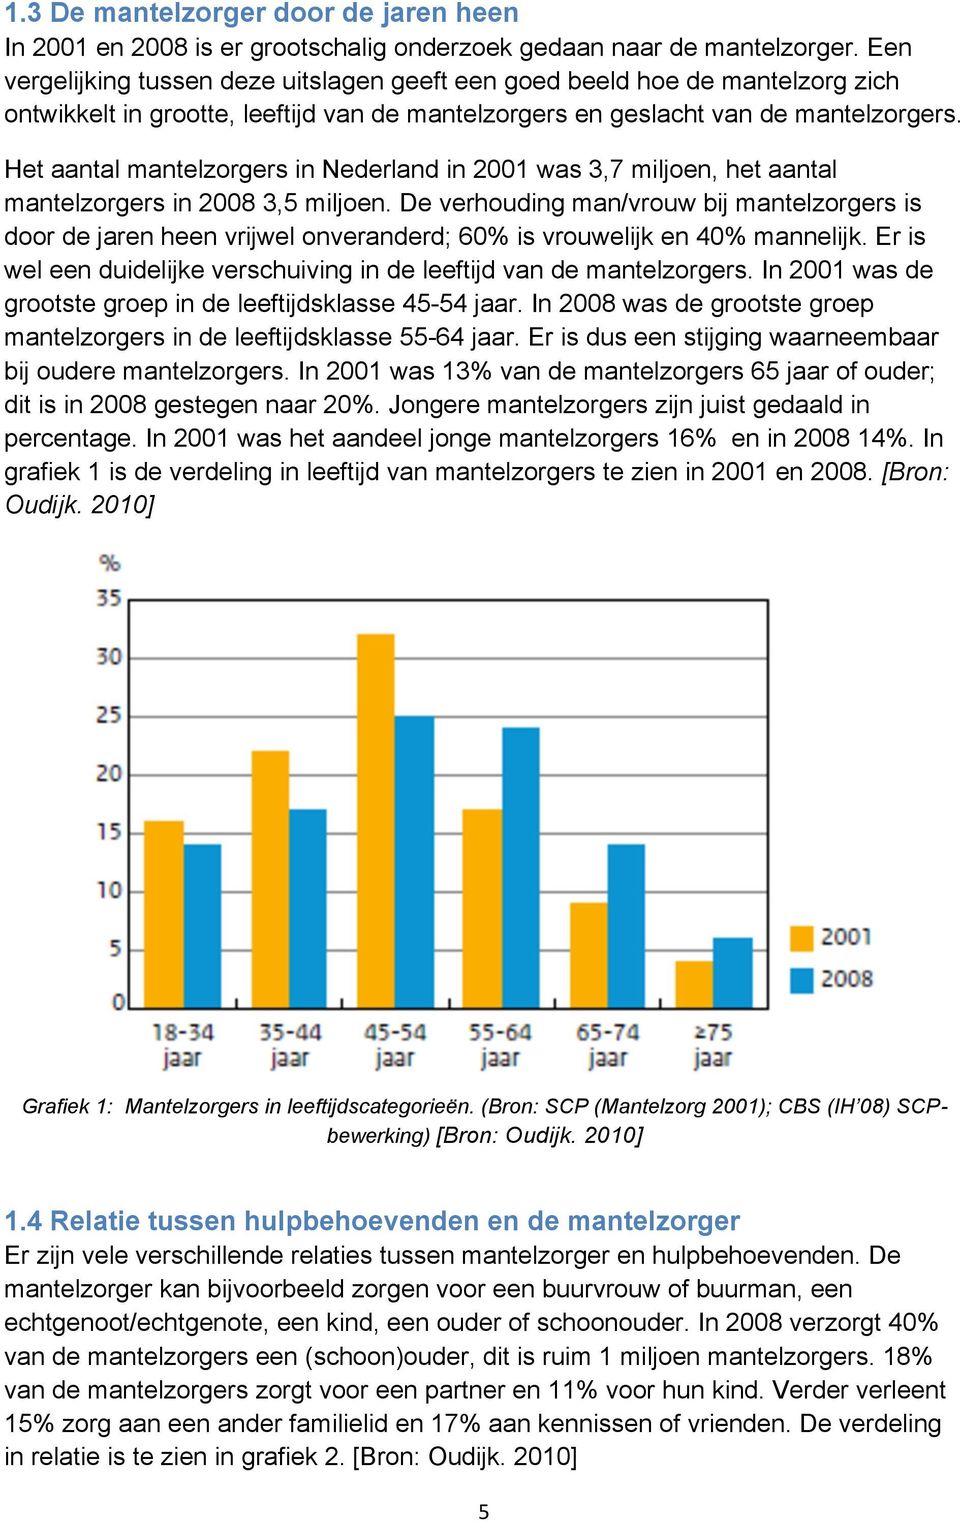 Het aantal mantelzorgers in Nederland in 2001 was 3,7 miljoen, het aantal mantelzorgers in 2008 3,5 miljoen.